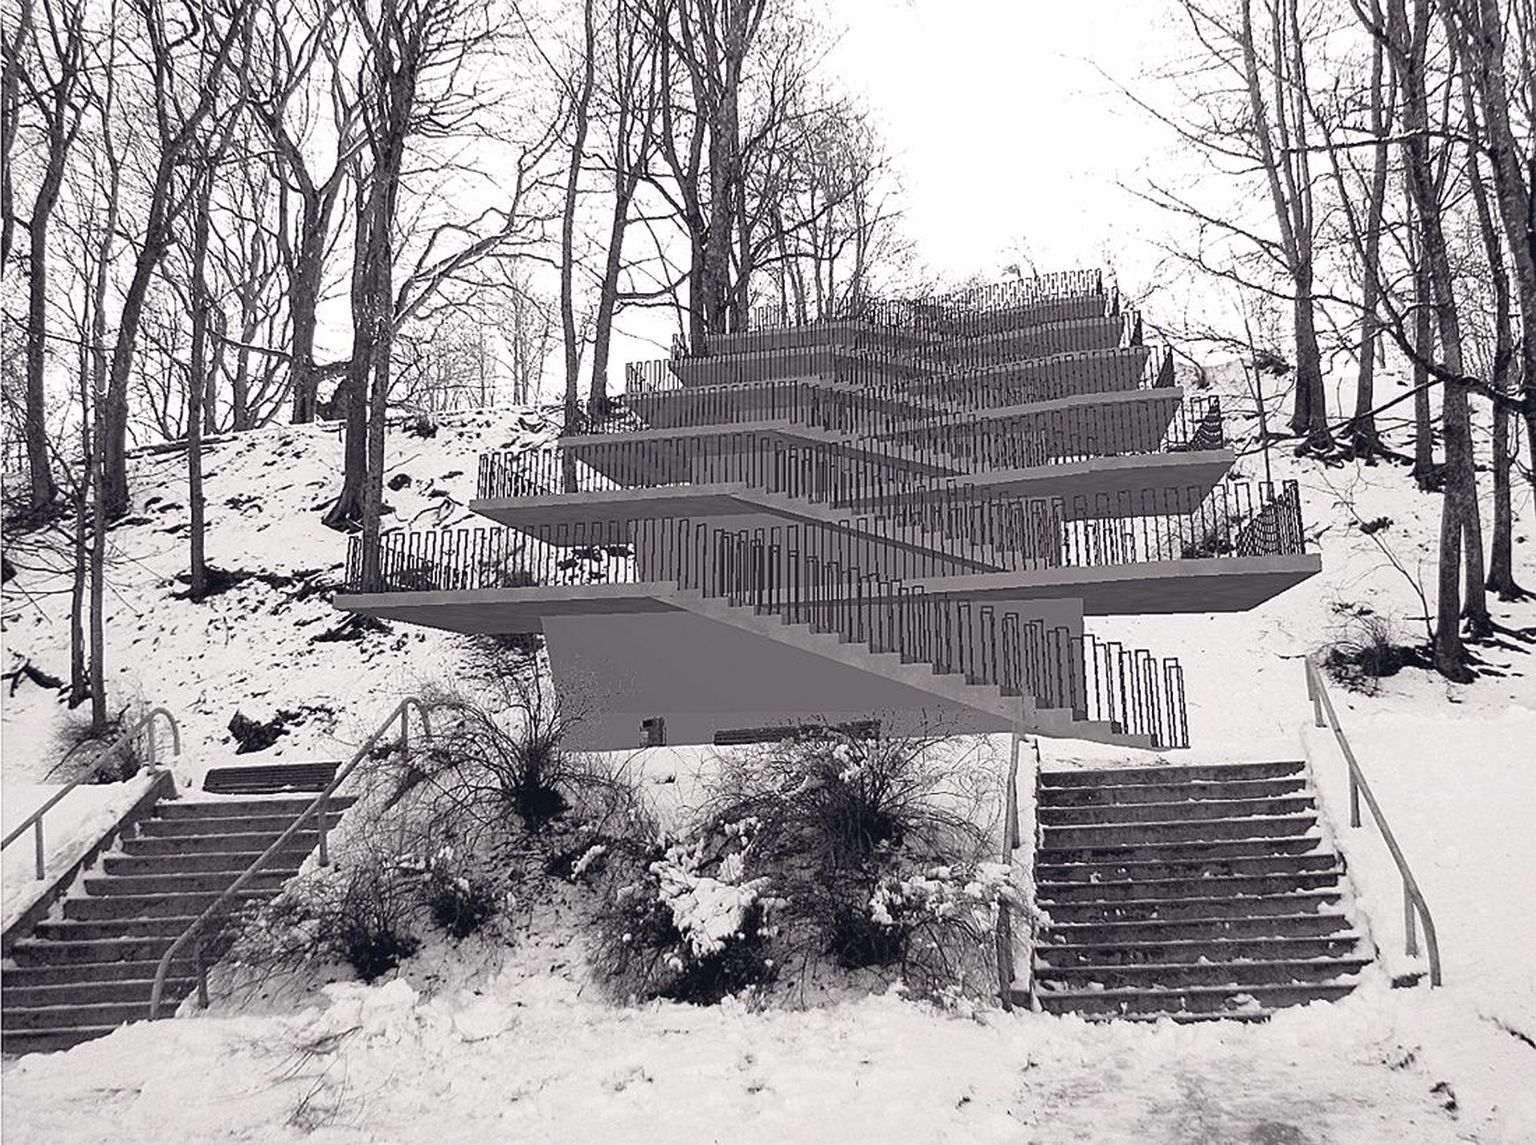 Pirogovi platsi trepistiku üks läinud talvel pakutud eskiislahendusi. Autorid on Artes Terrae maastikuarhitektid Heiki Kalberg, Sulev Nurme ja Indrek Oden. Samuti kuuluvad autorite hulka arhitektid Uko Künnap ja Andrus Vahrušev.